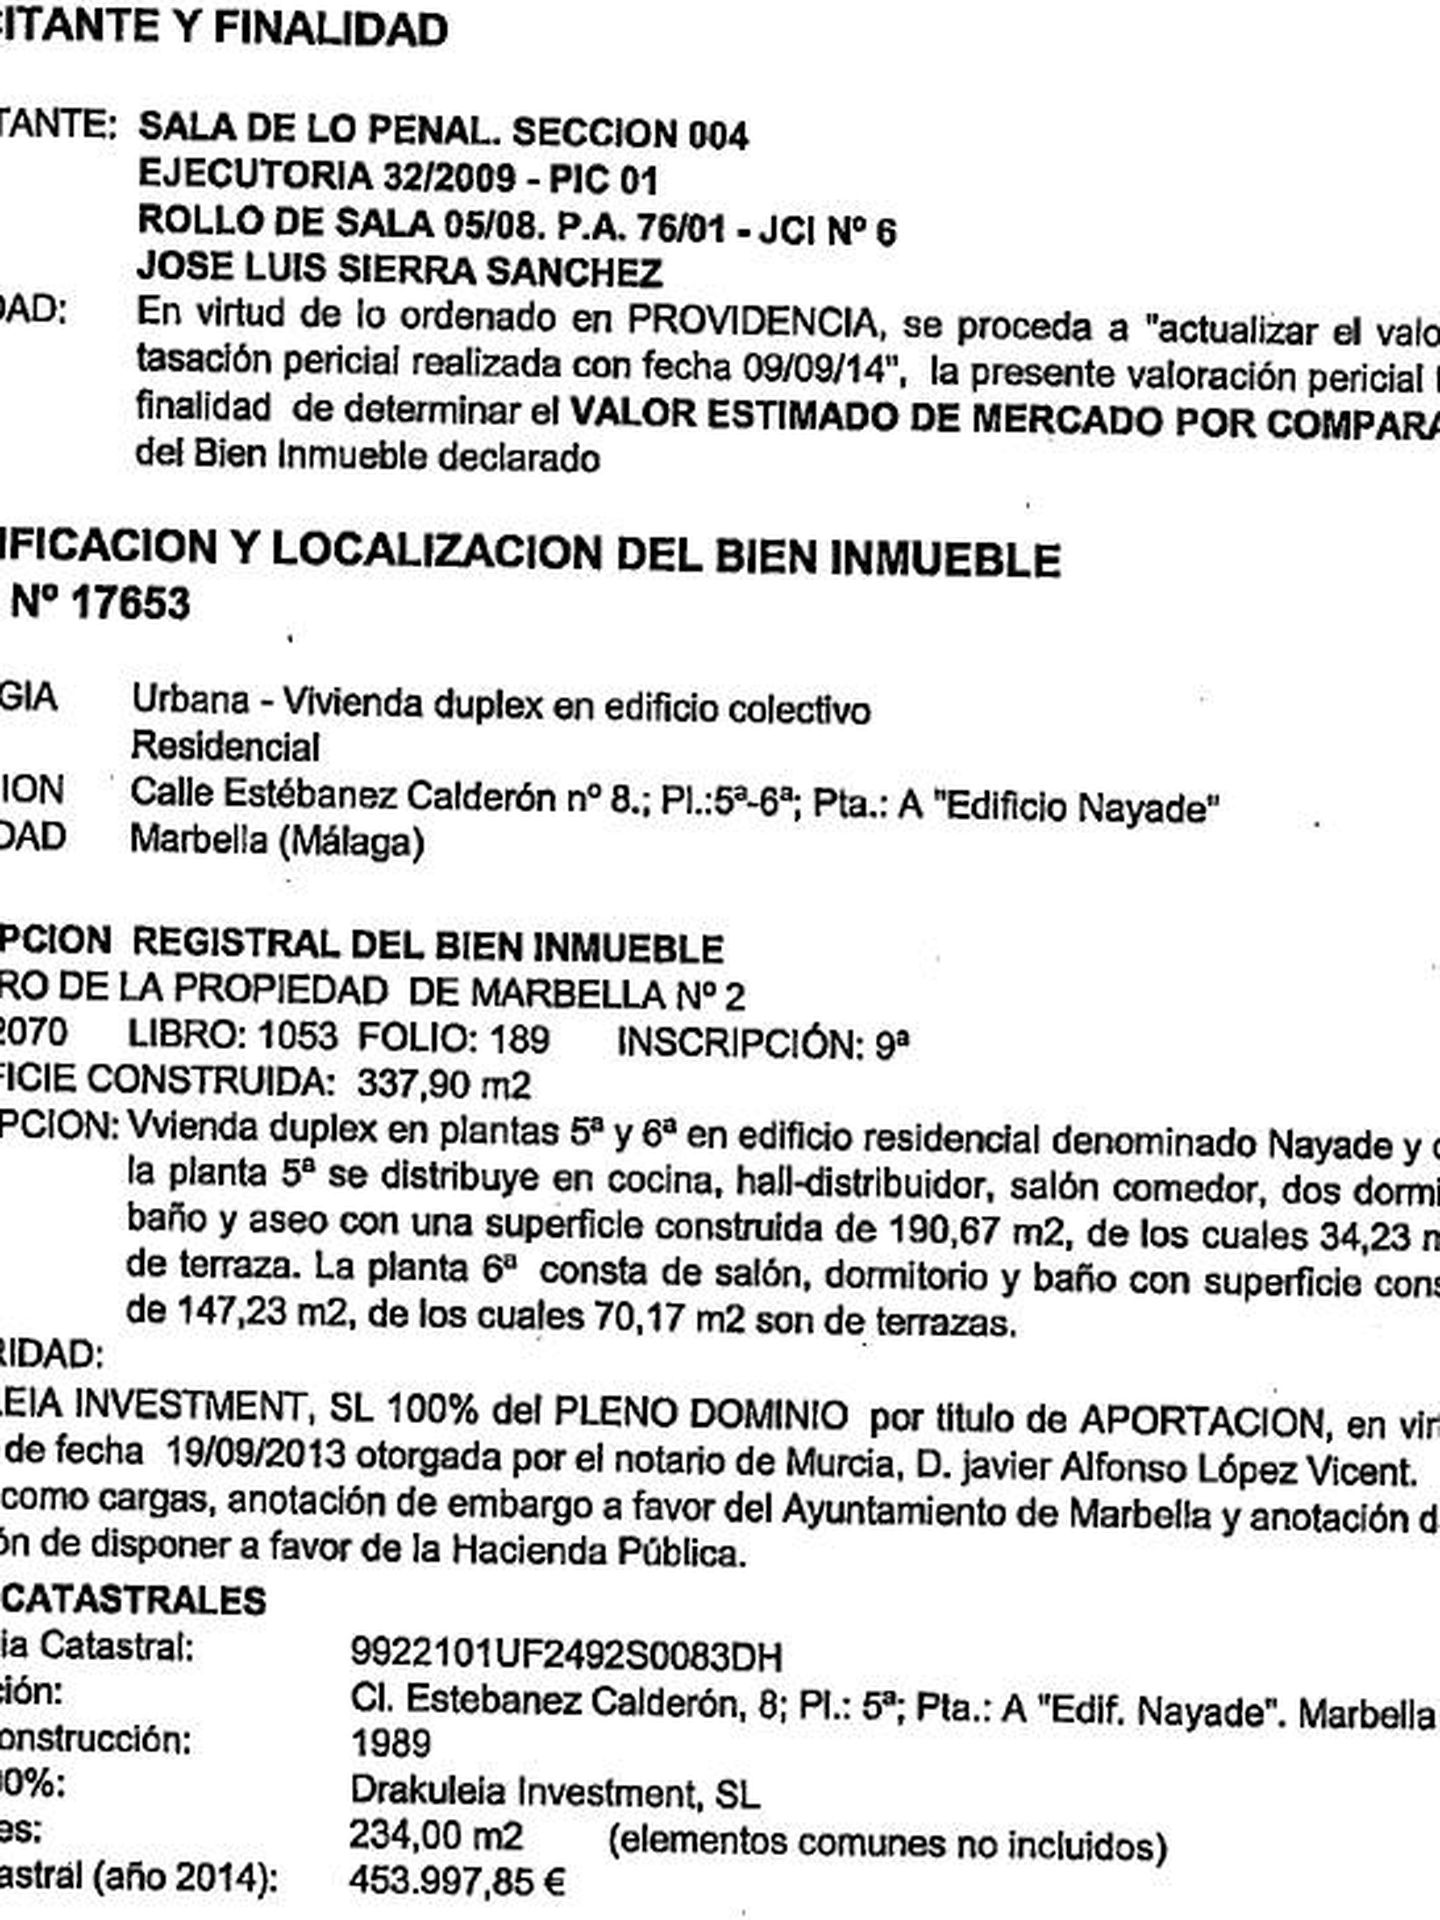 Fragmento de la ejecutoria de la Audiencia Nacional sobre el dúplex de Marbella de J. L. Sierra.